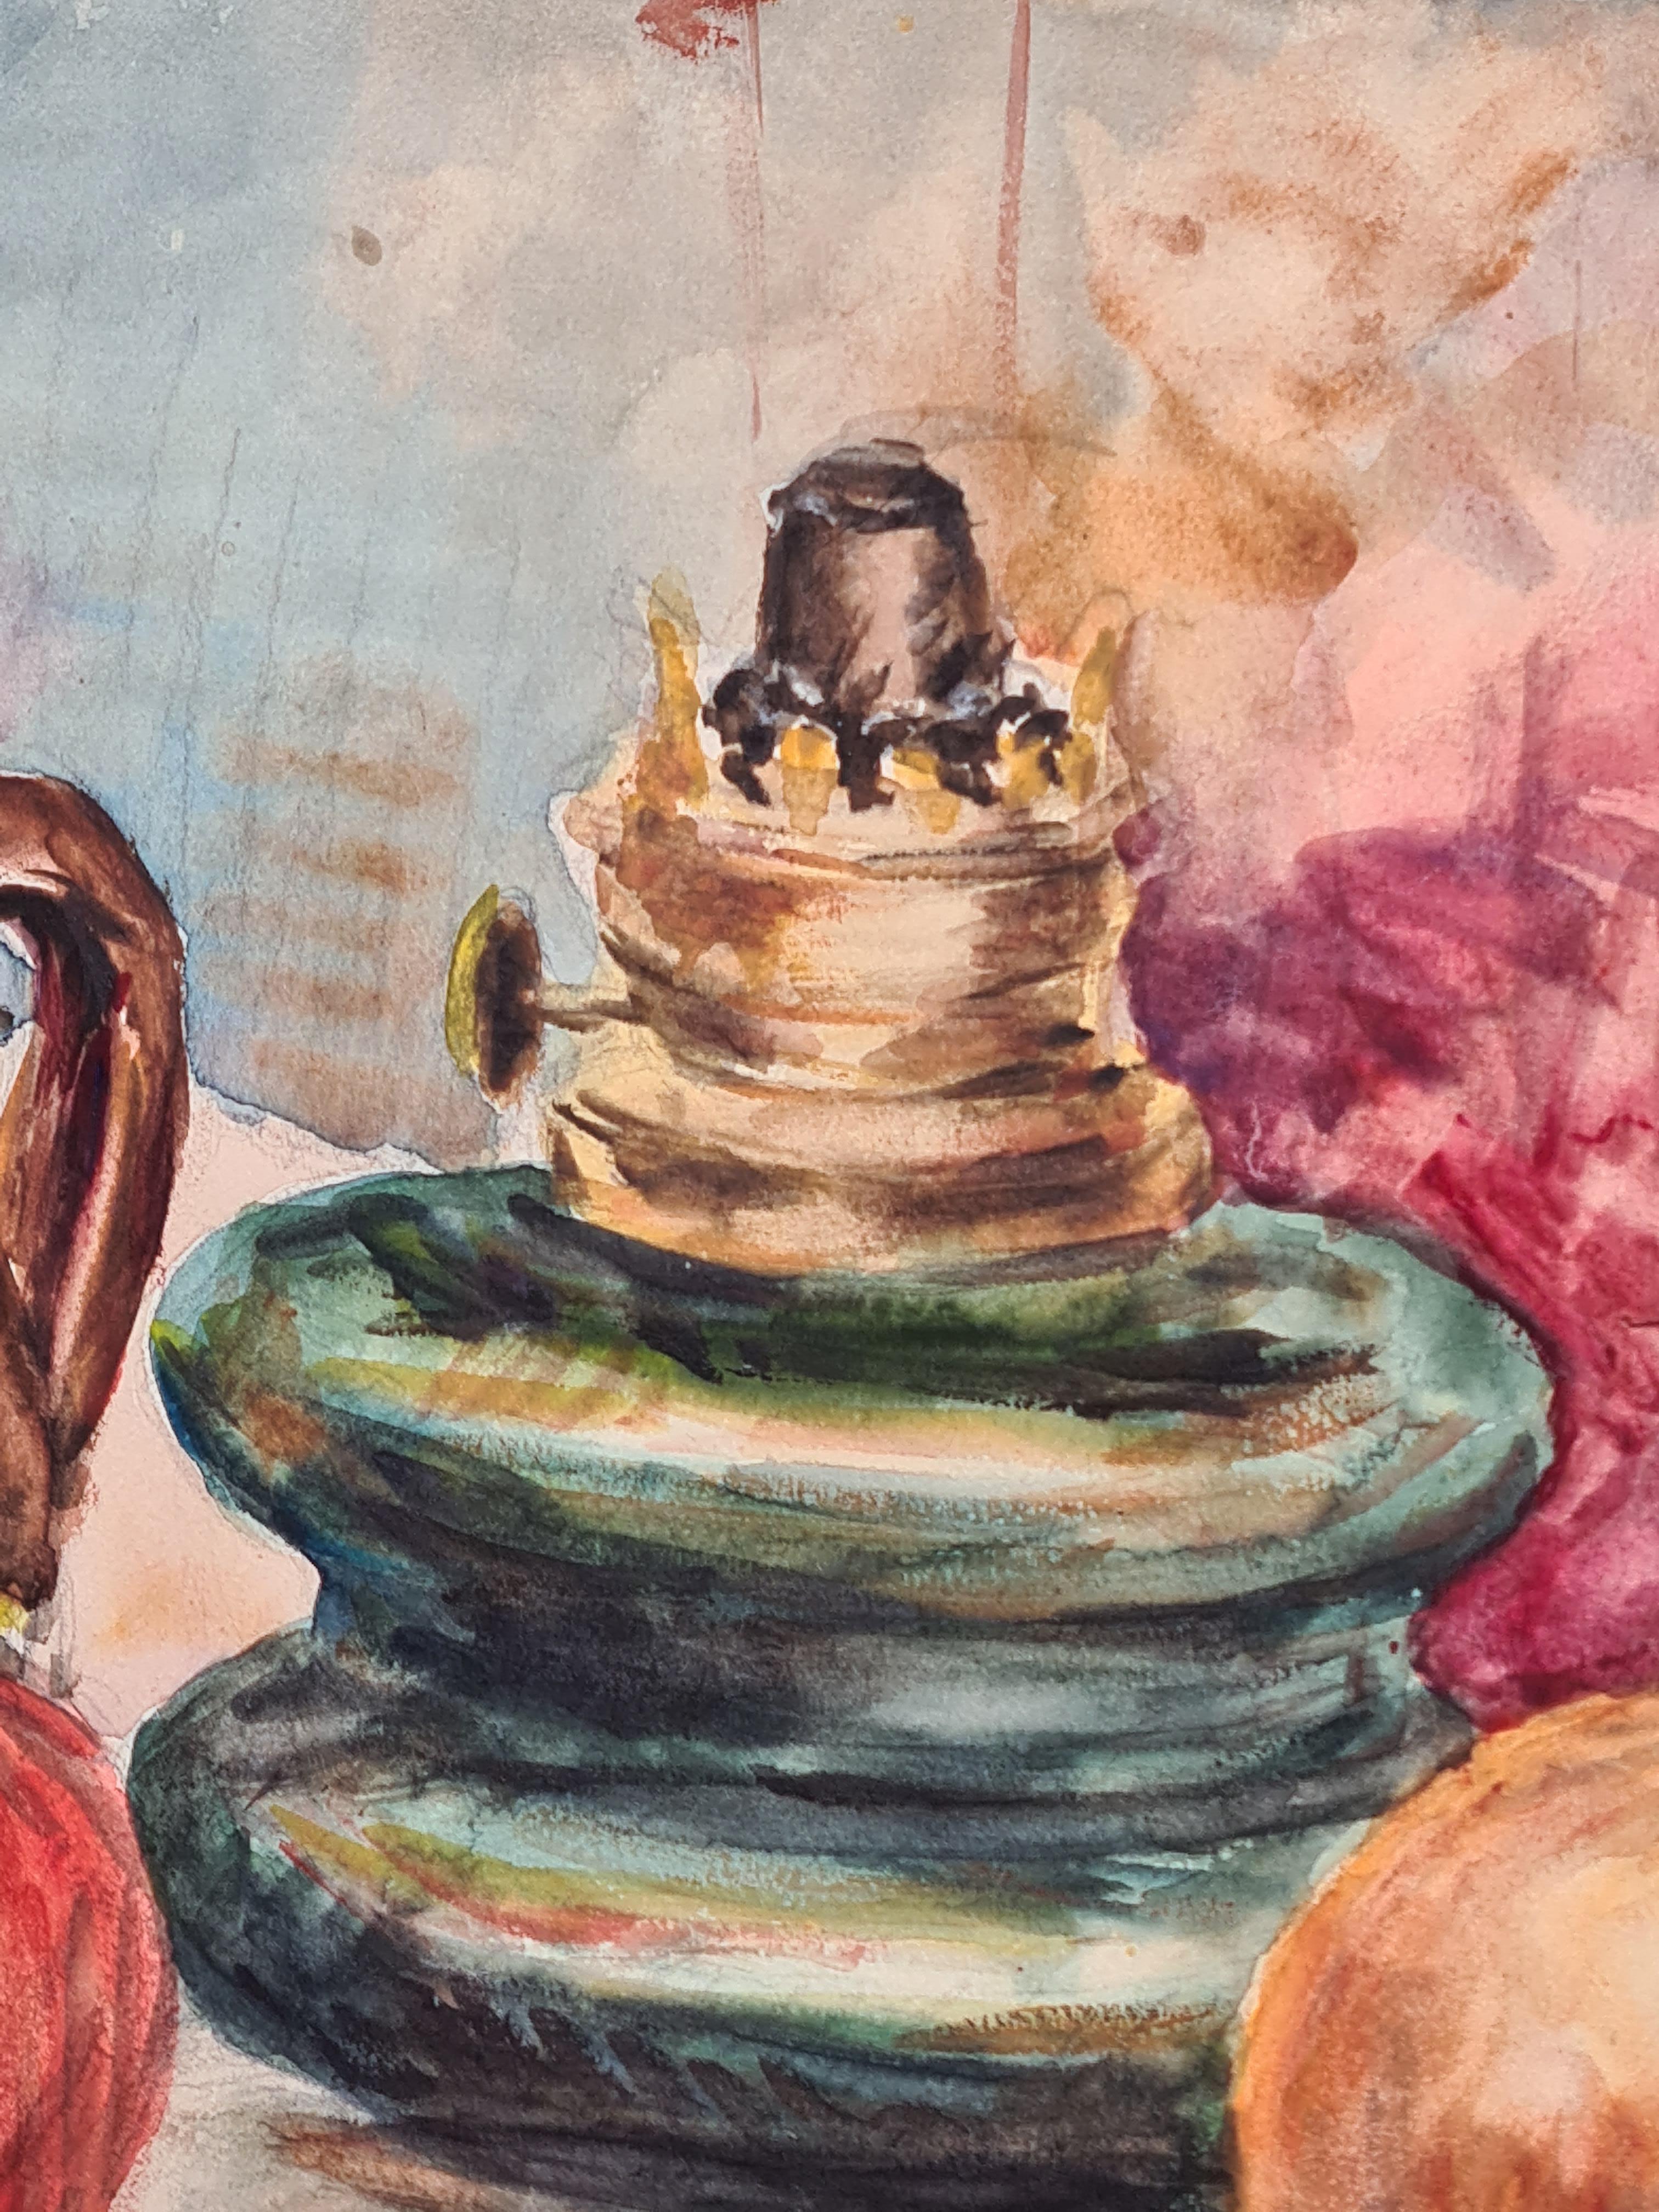 Aquarelle impressionniste française sur papier représentant une nature morte colorée d'Henri Clamen. Le tableau n'est pas signé mais a été acquis dans l'atelier de l'artiste avec d'autres œuvres signées.

Une vue charmante d'un paysage de table